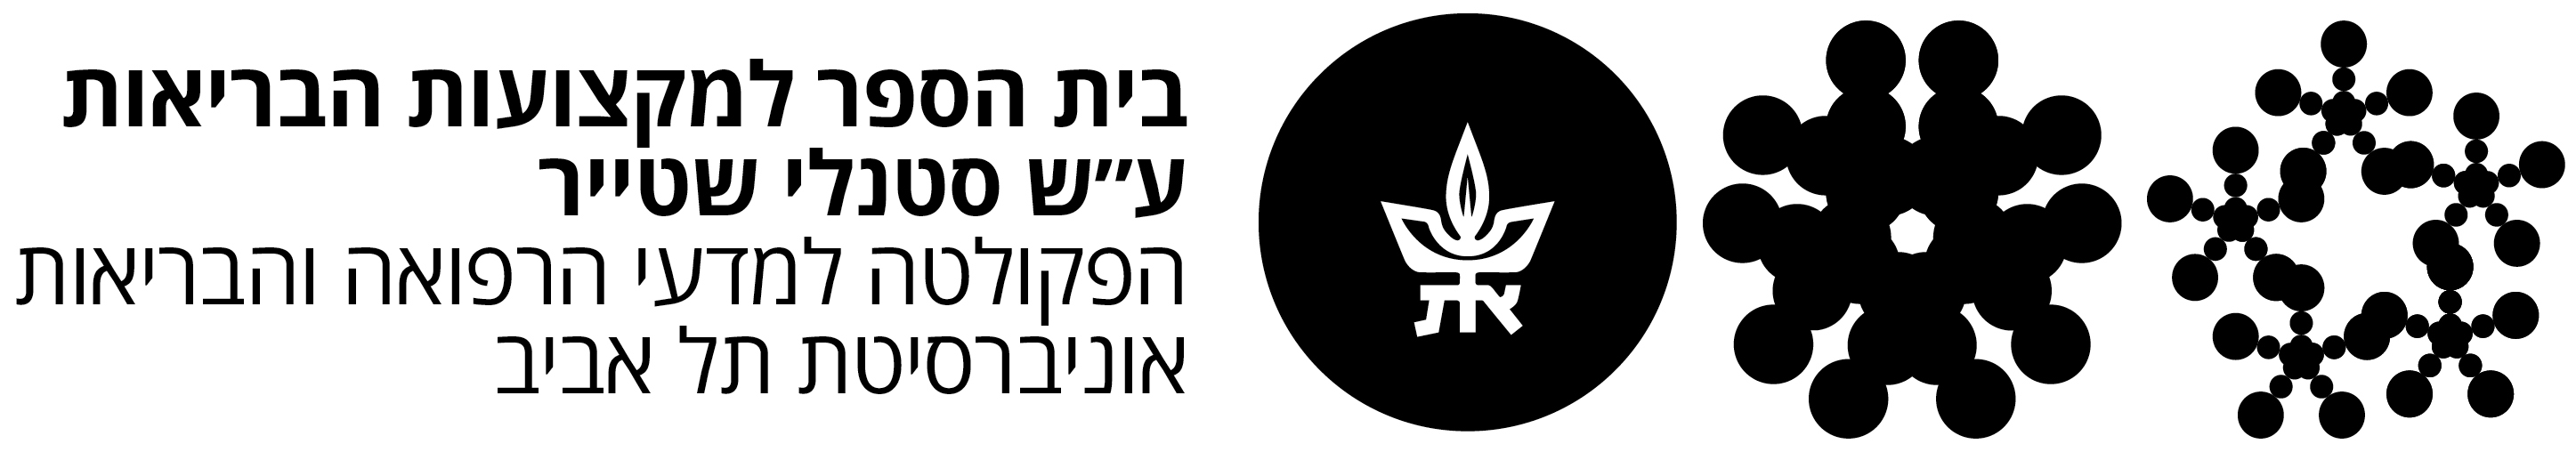 לוגו - אוניברסיטת תל אביב - בעקבות הלא נודע